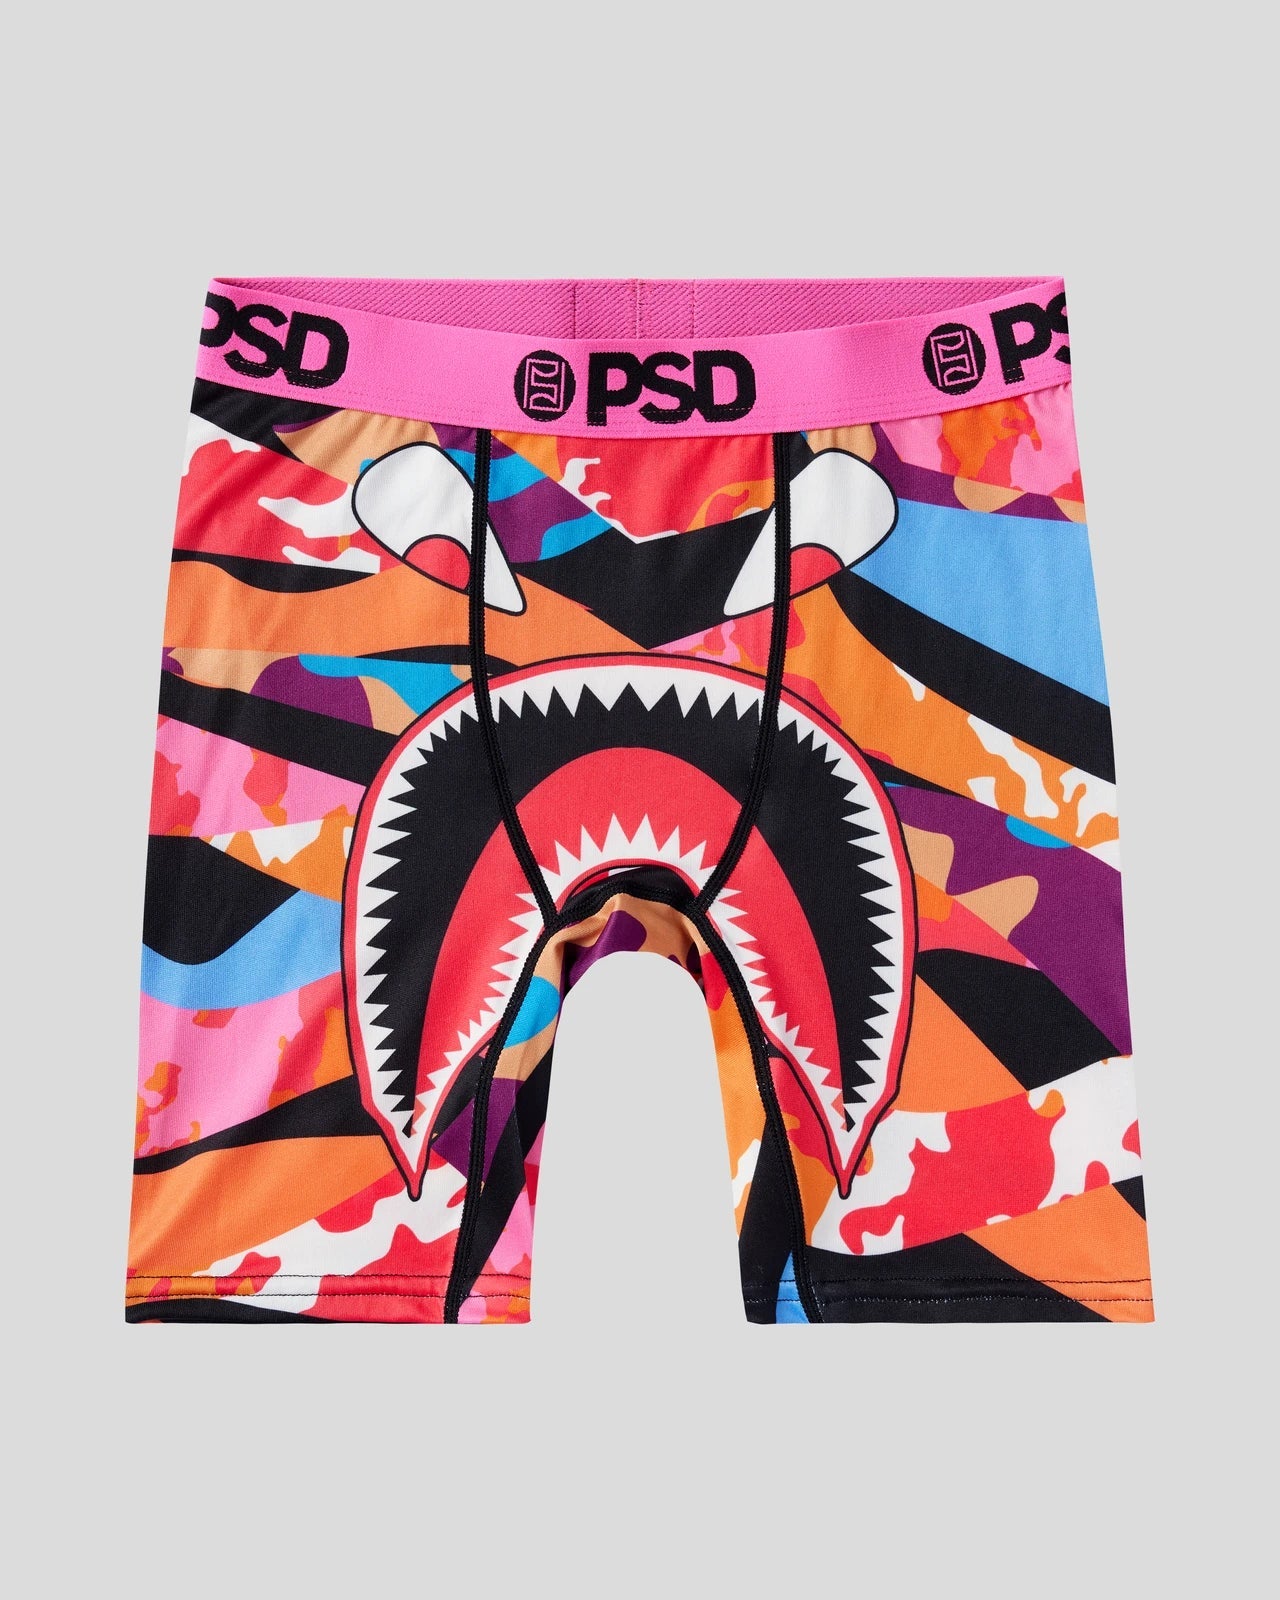 Shop All  PSD Underwear - Men's, Women's, & Youth Styles